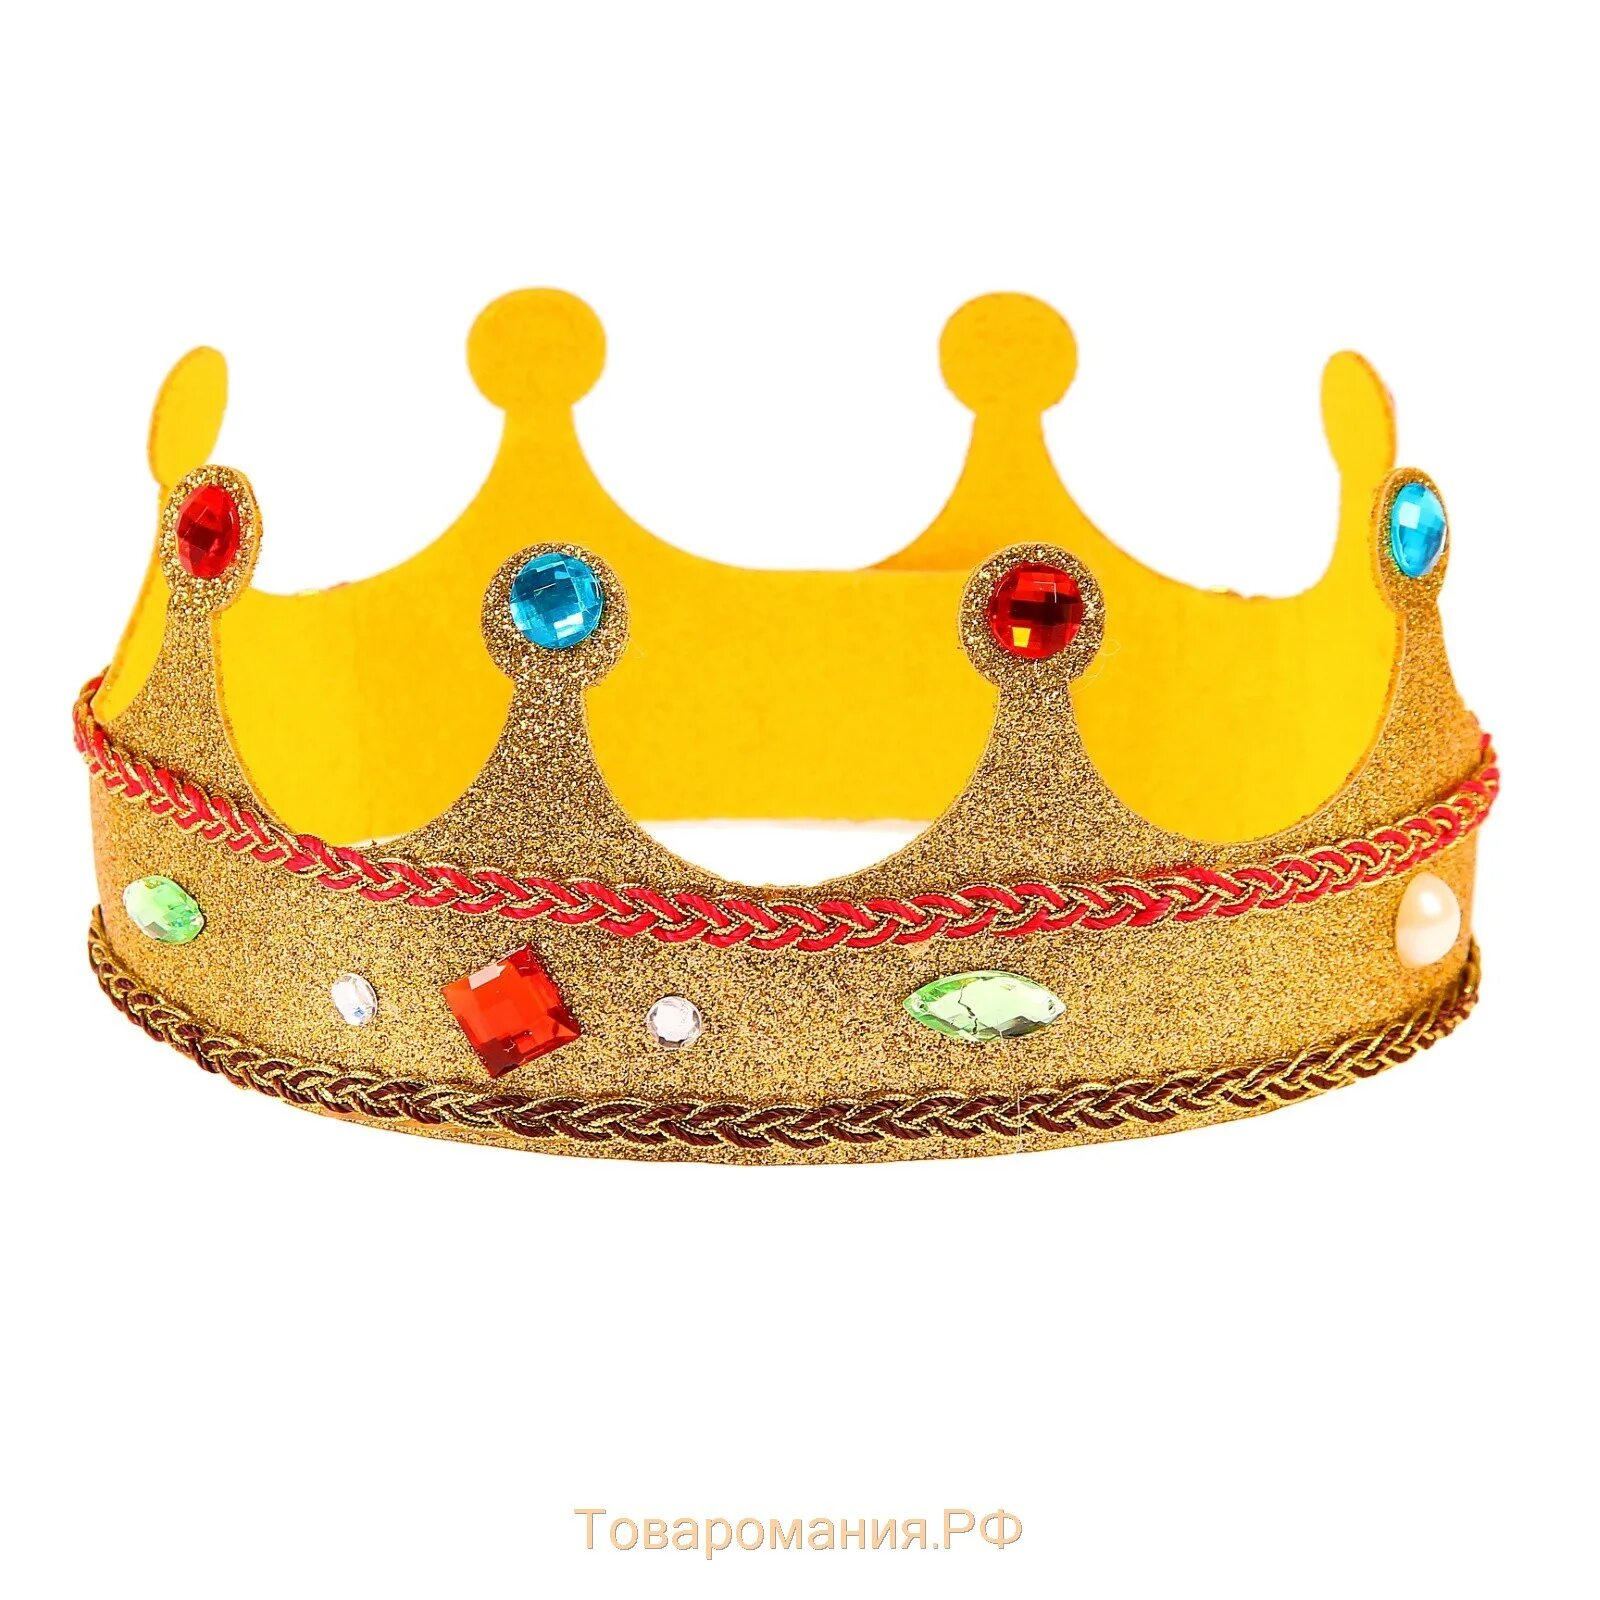 Детские короны. Корона для садика. Короны для детского праздника. Золотая корона игрушечная. Купить корону хабаровск